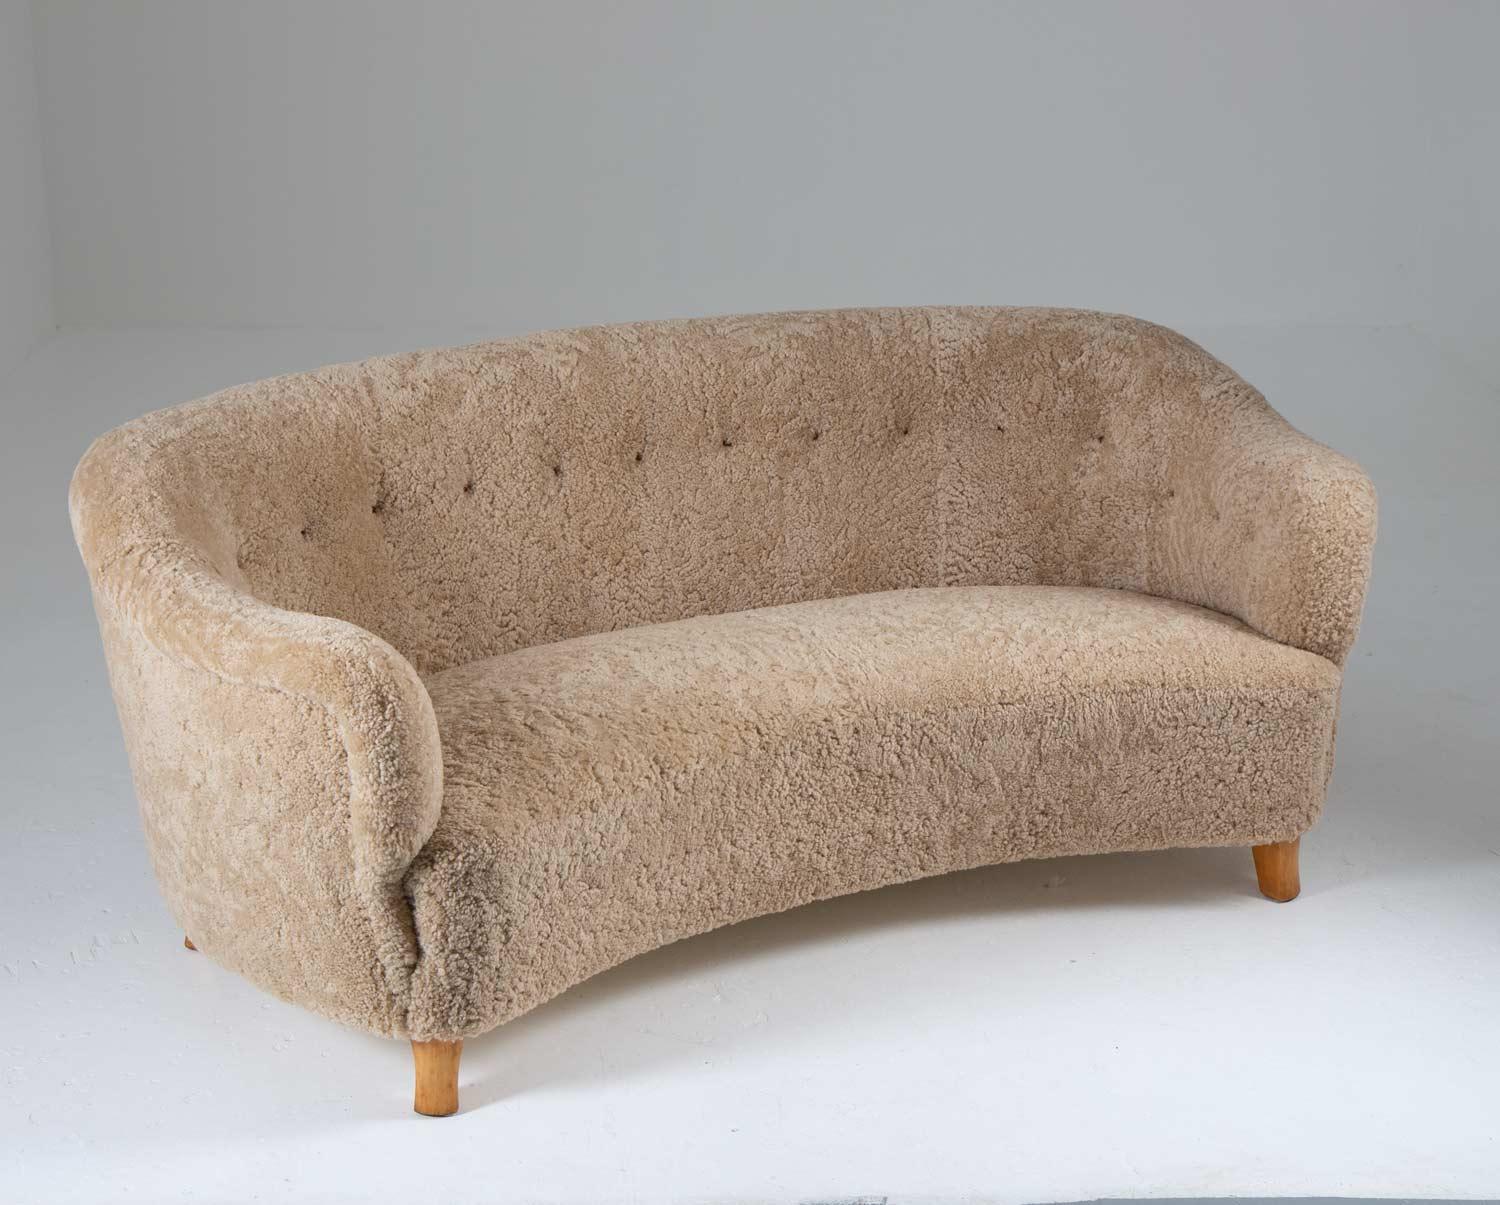 Geschwungenes 3-Sitzer-Sofa, Otto Schulz für Boet, Schweden.
Hochwertiges Sofa mit organischen Linien, das ebenso bequem wie schön ist. 
Das Sofa wurde mit elfenbeinfarbenem Schafsleder und cognacfarbenen Lederknöpfen neu gepolstert.

Zustand: